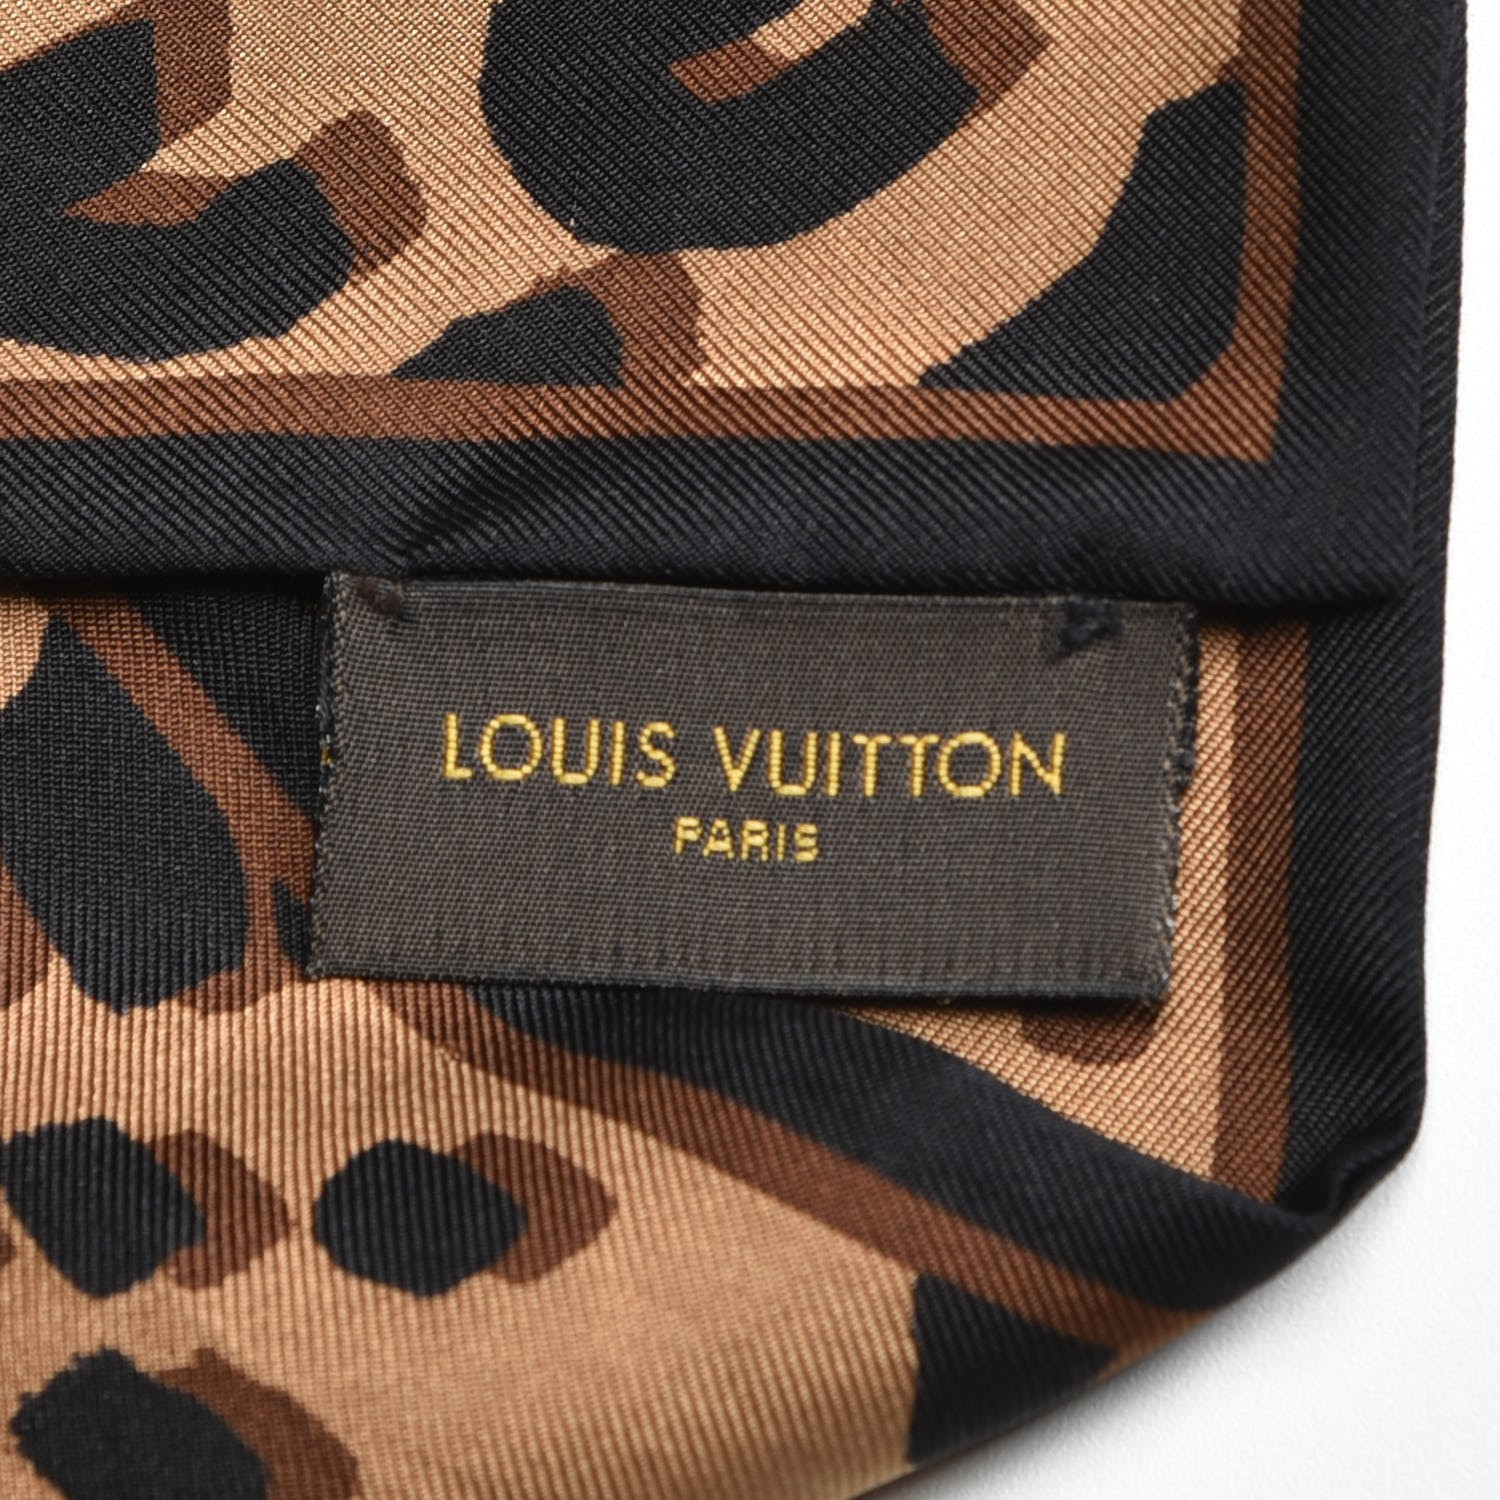 Louis Vuitton Beige/Brown Cashmere/Silk Stephen Sprouse Leopard